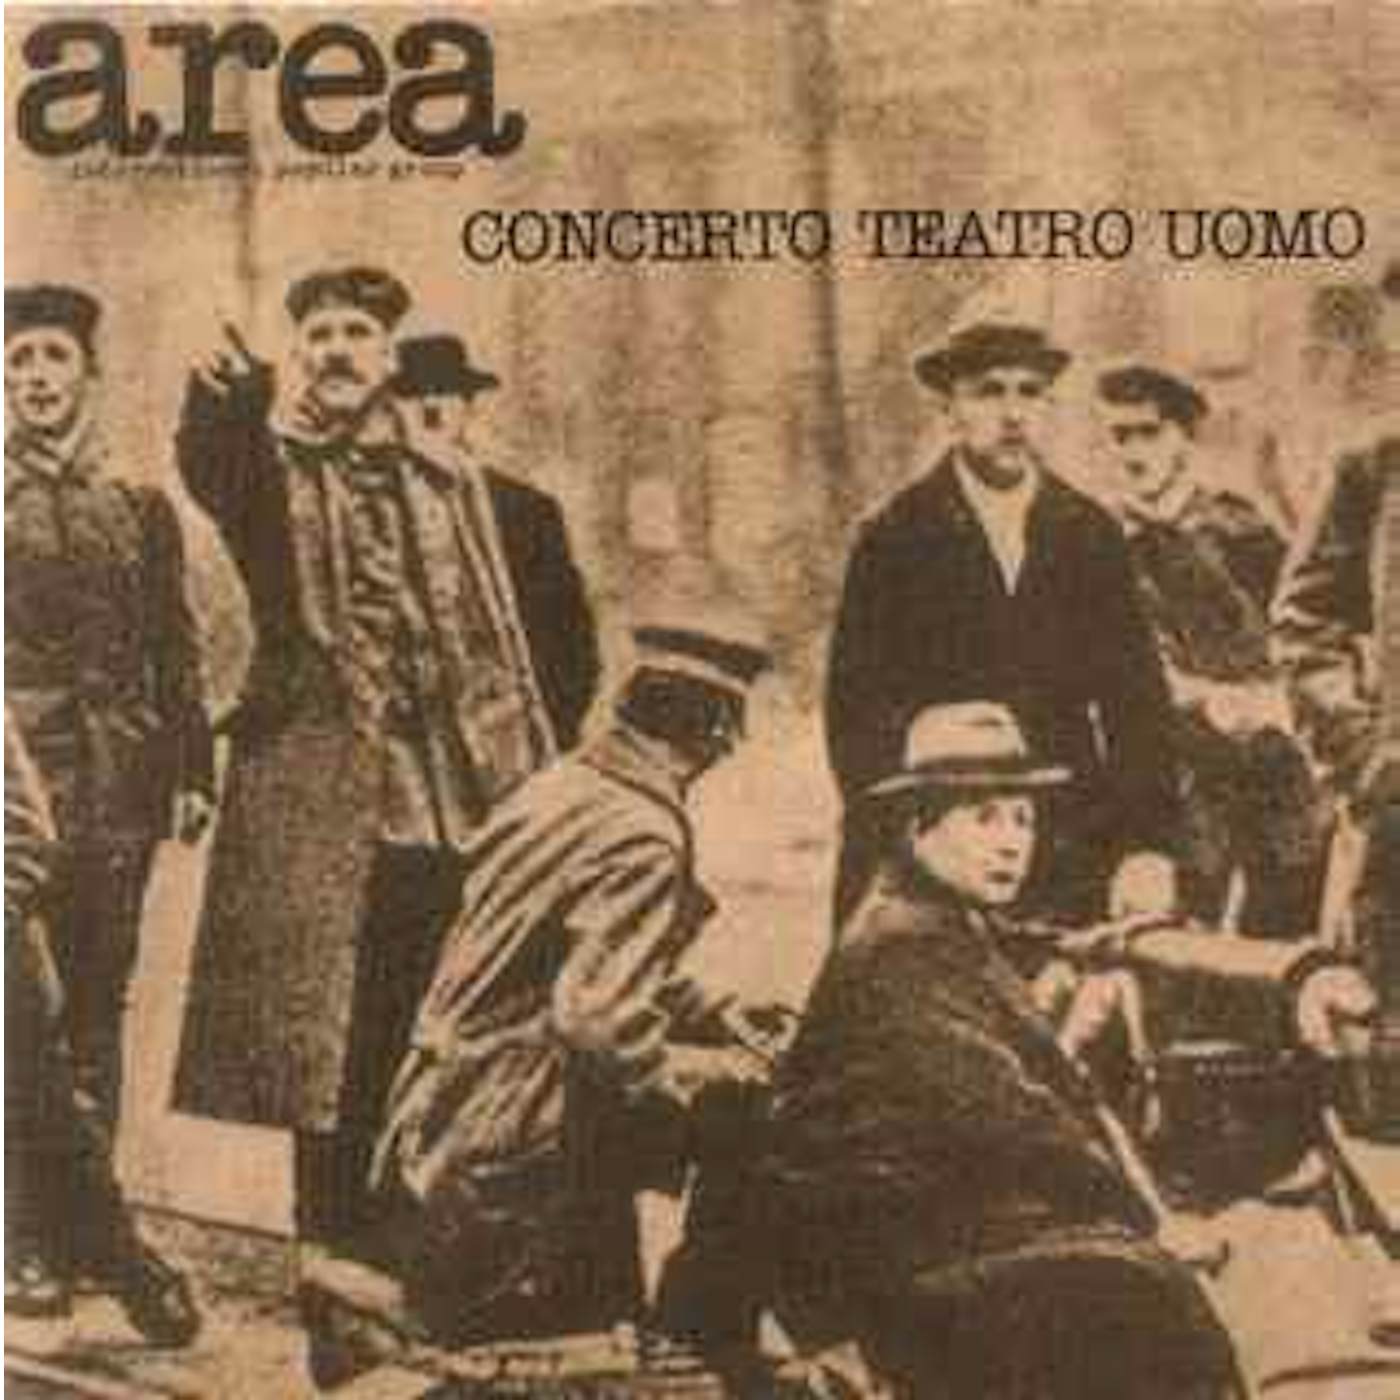 Area CONCERT TEATRO UOMO CD